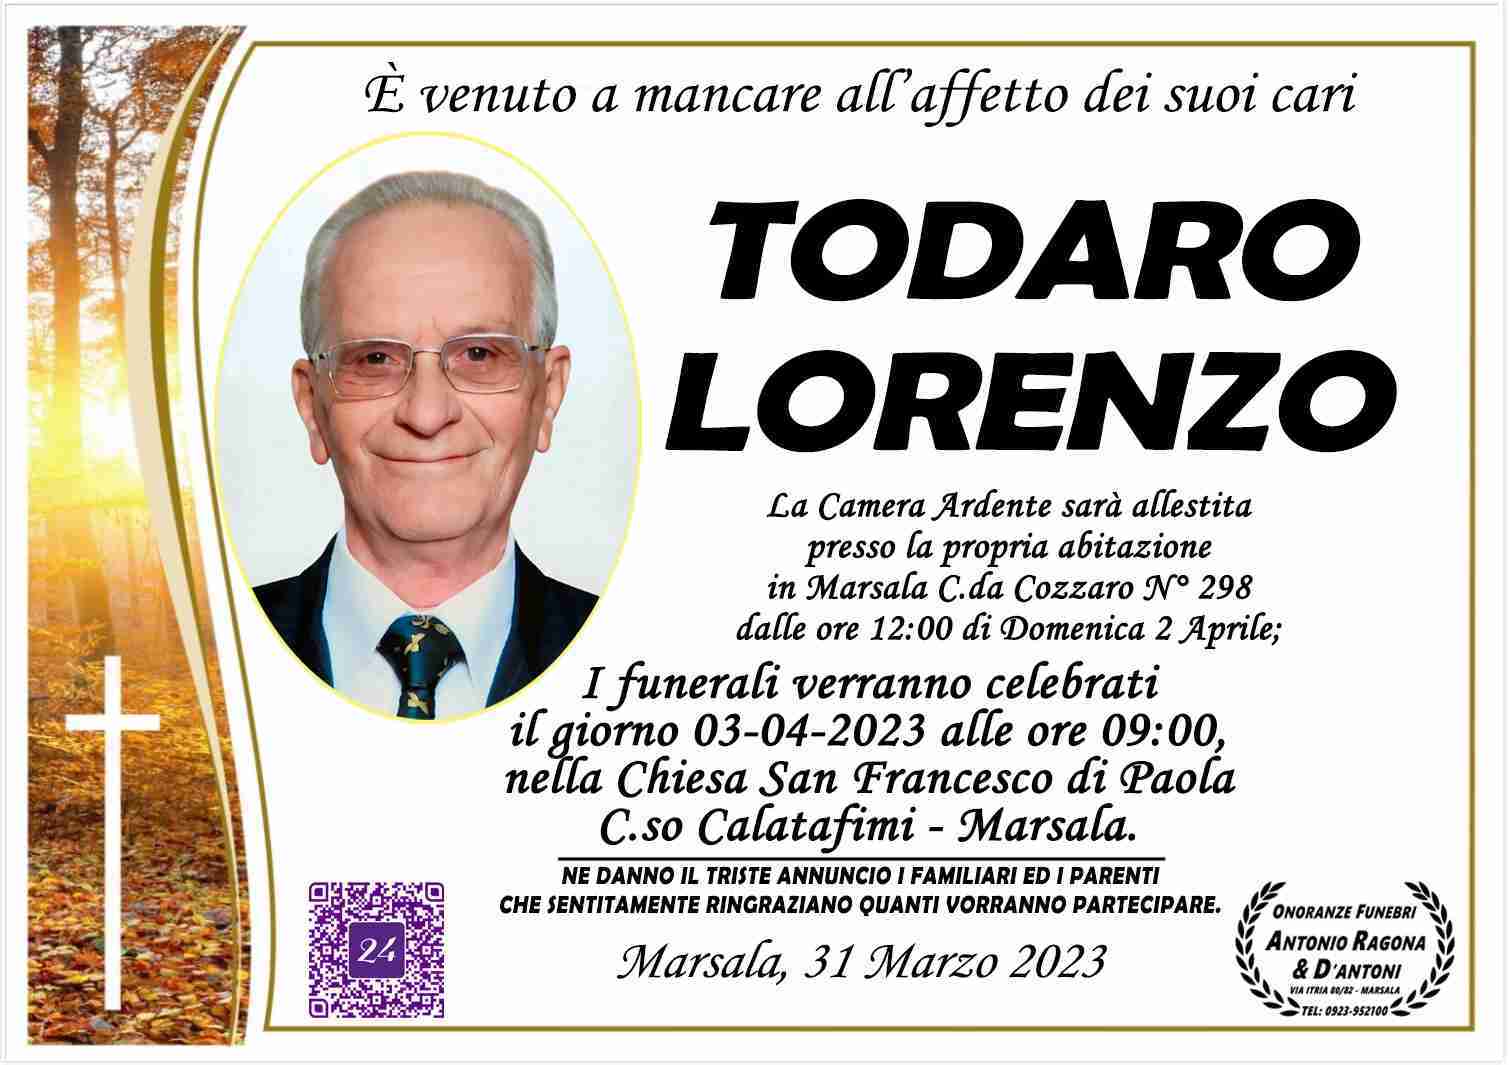 Lorenzo Todaro